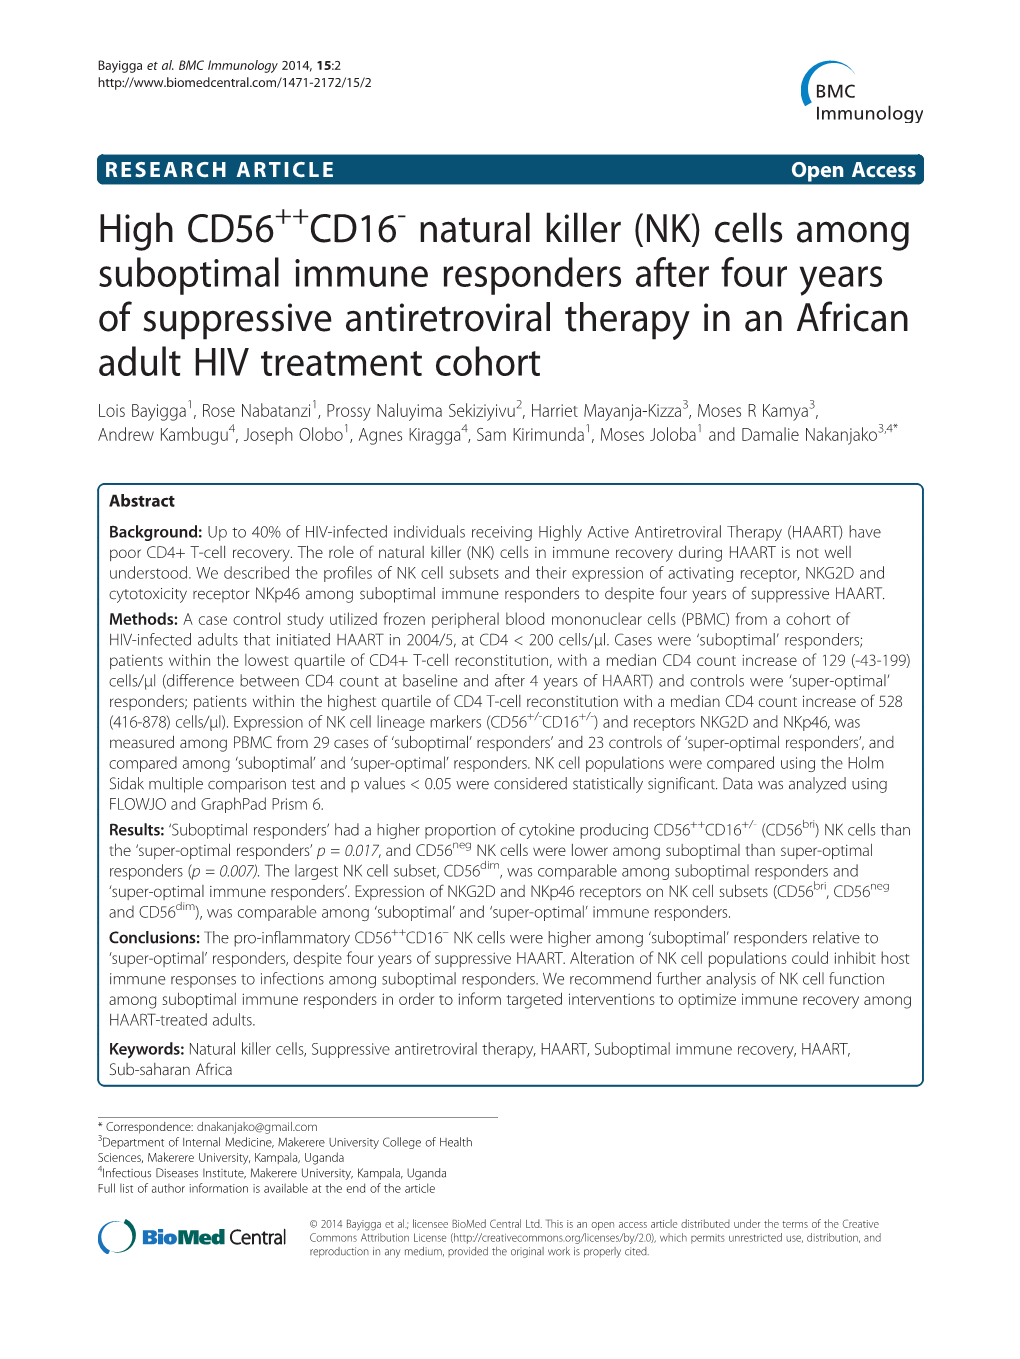 High CD56 CD16 Natural Killer (NK) 14